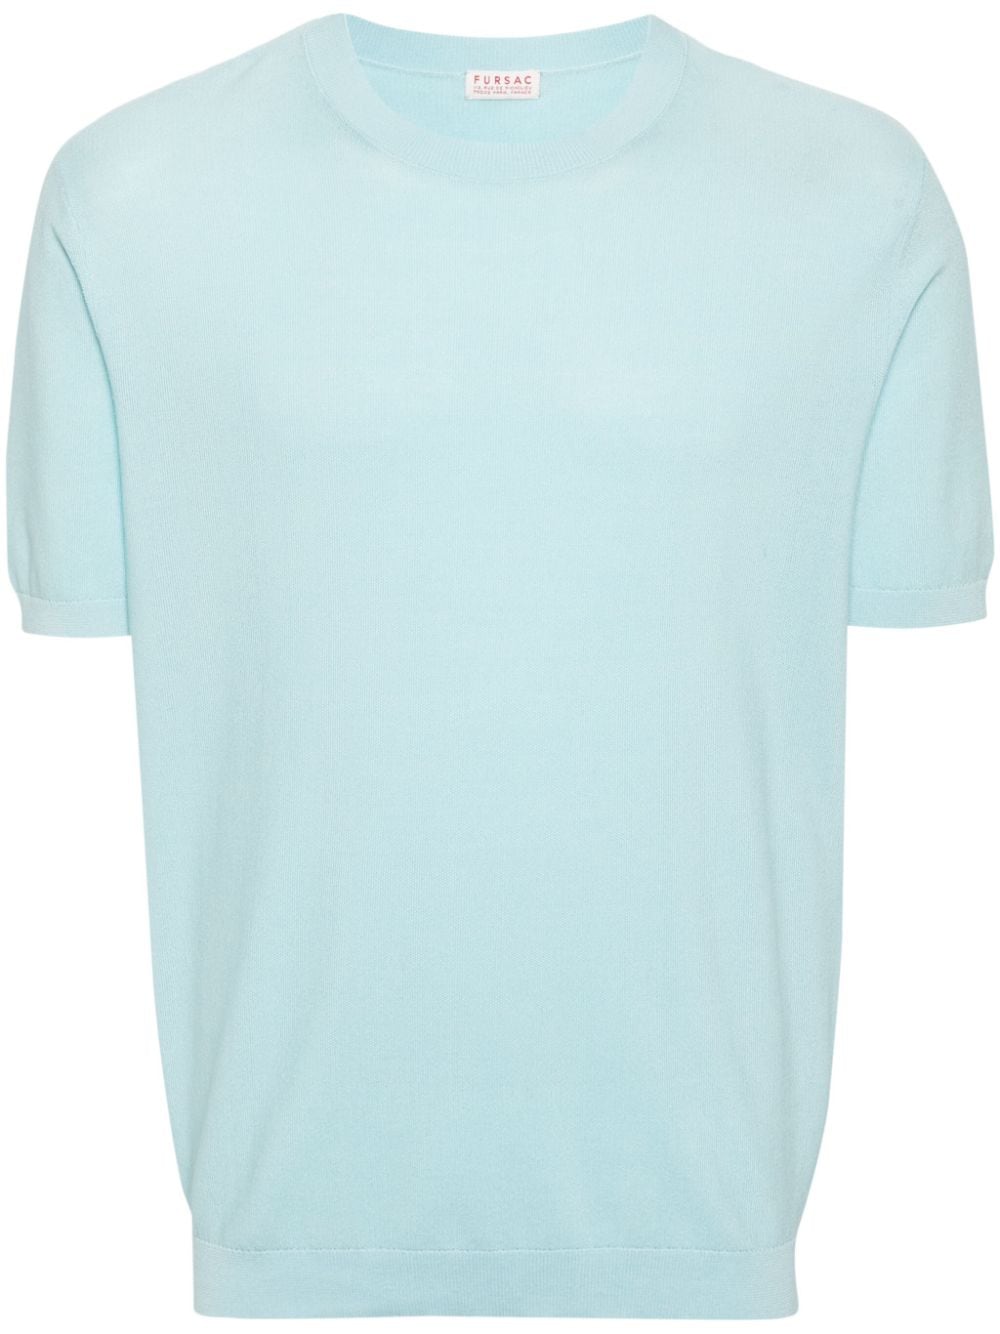 FURSAC piqué short-sleeved T-shirt - Blue von FURSAC